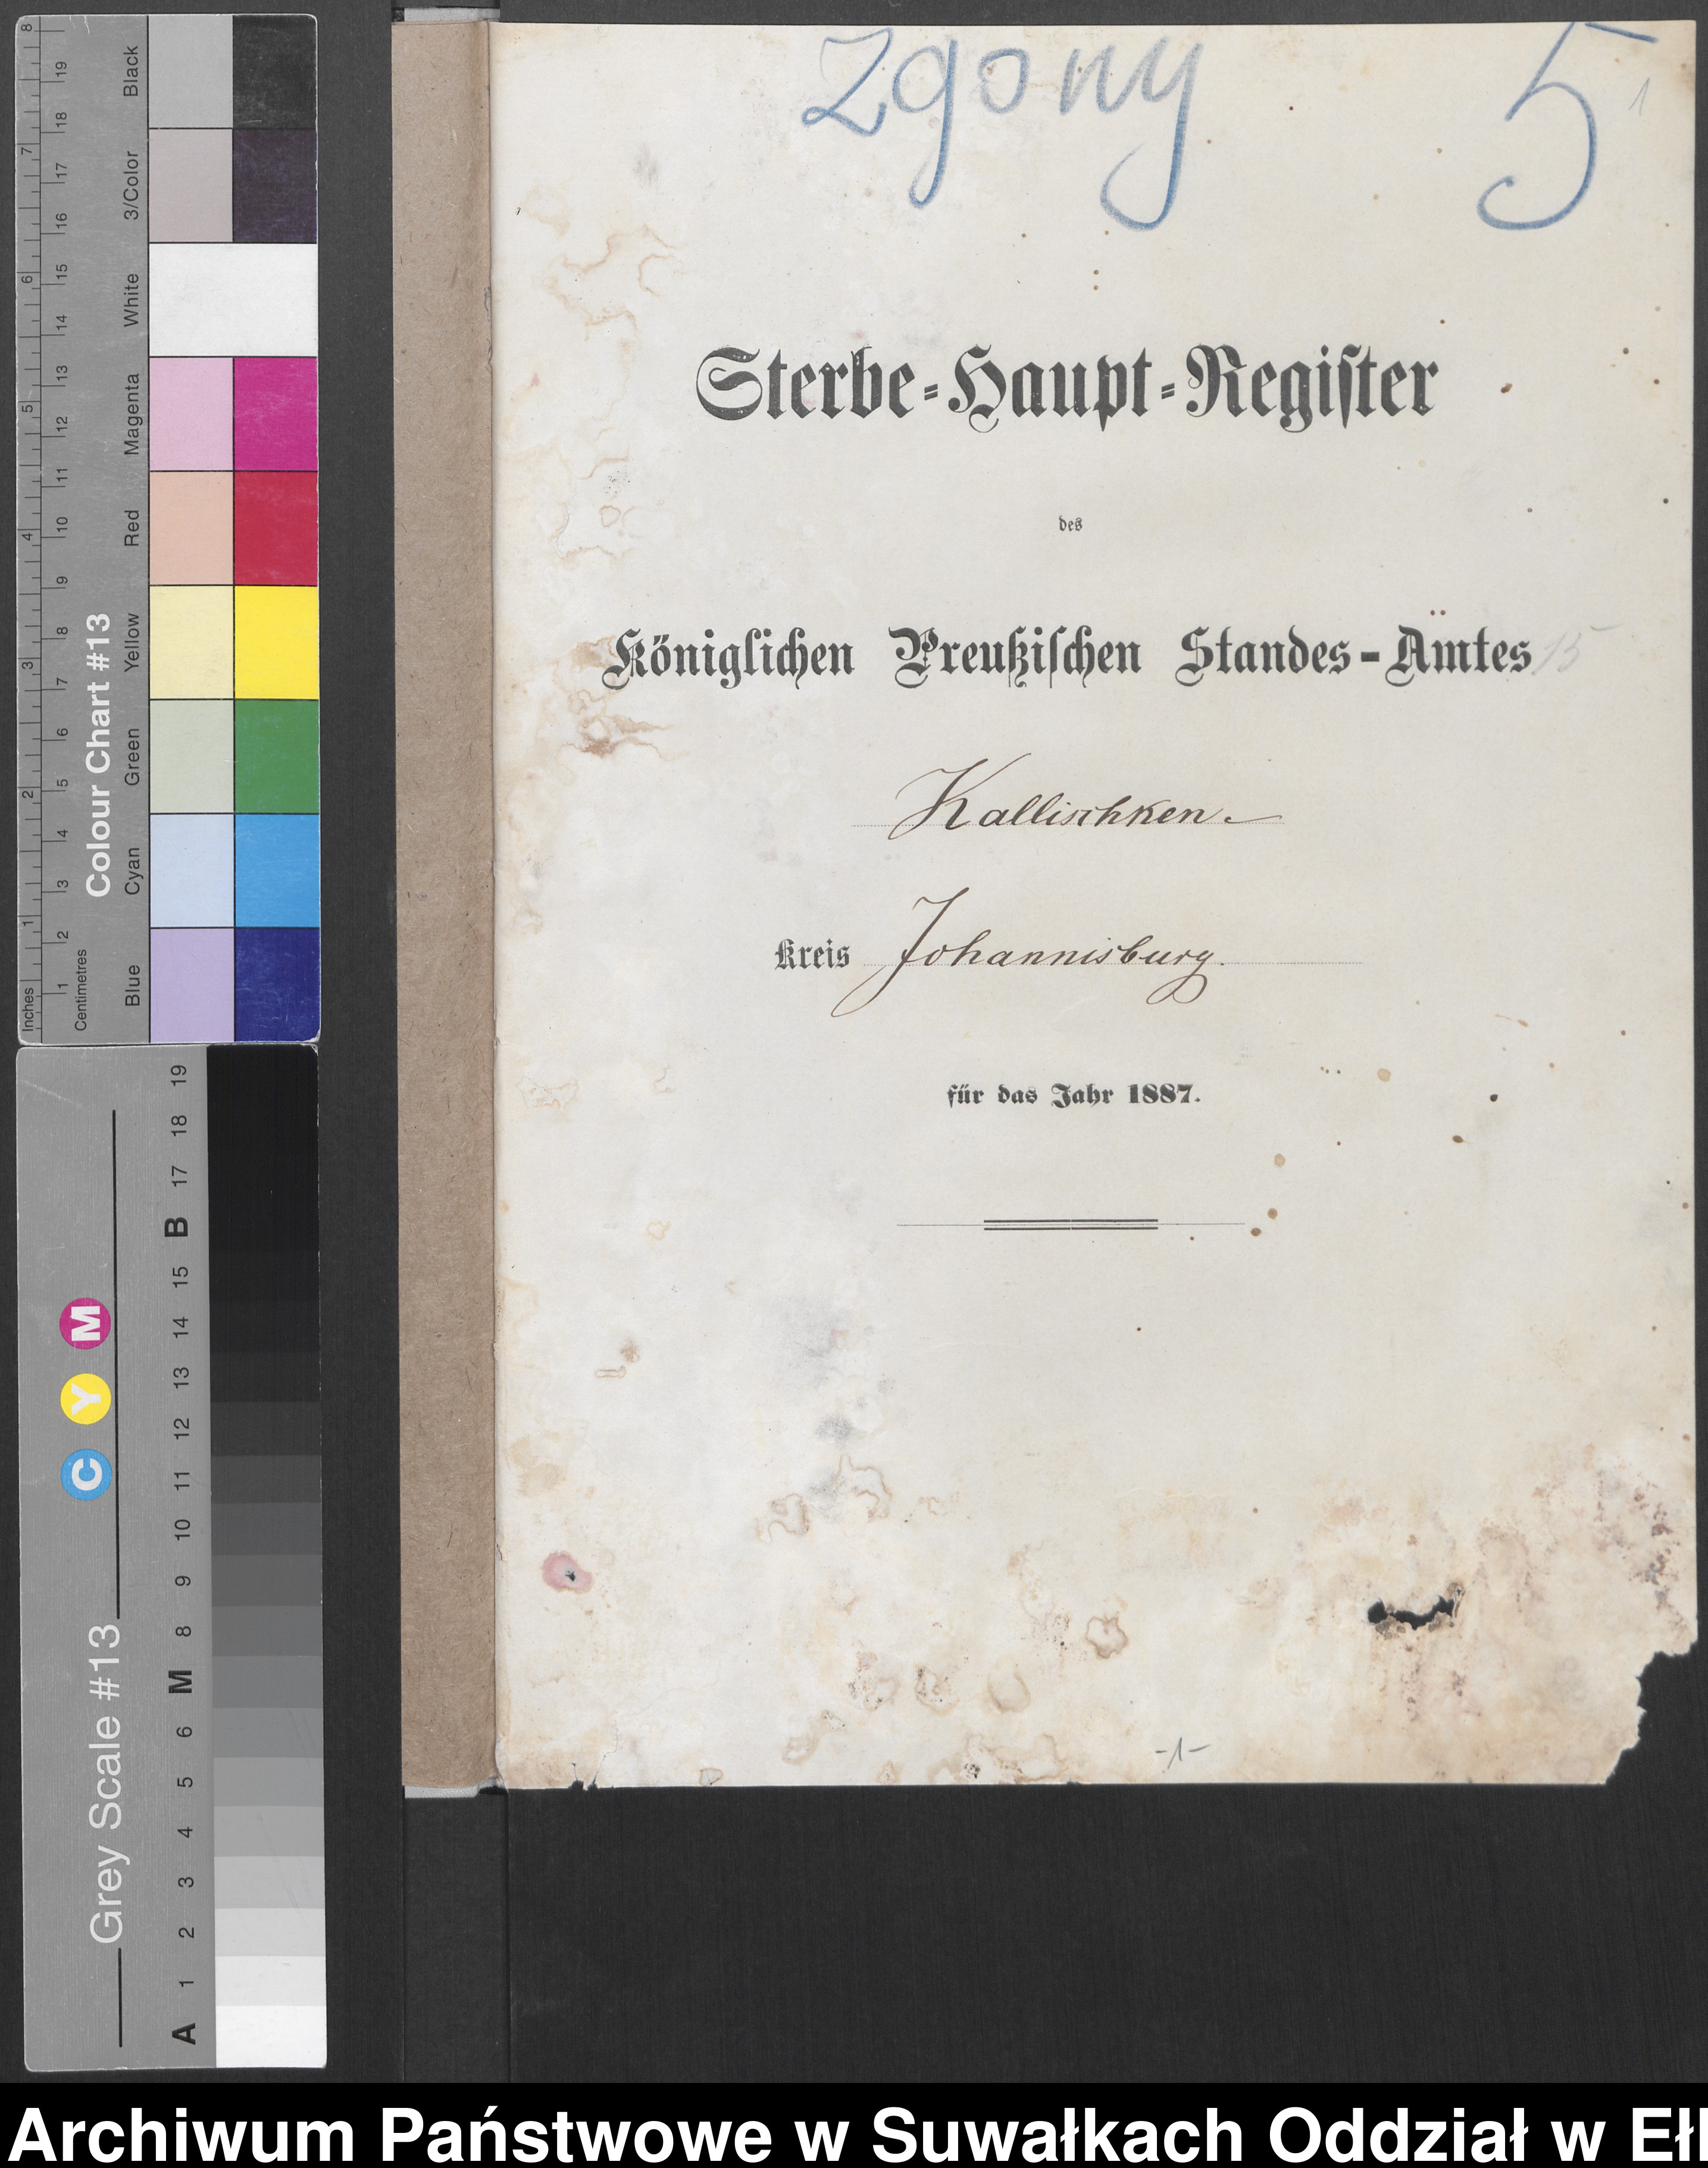 Skan z jednostki: Sterbe-Haupt-Register des Königlichen Preussischen Standes-Amtes Kallischken Kreis Johannisburg